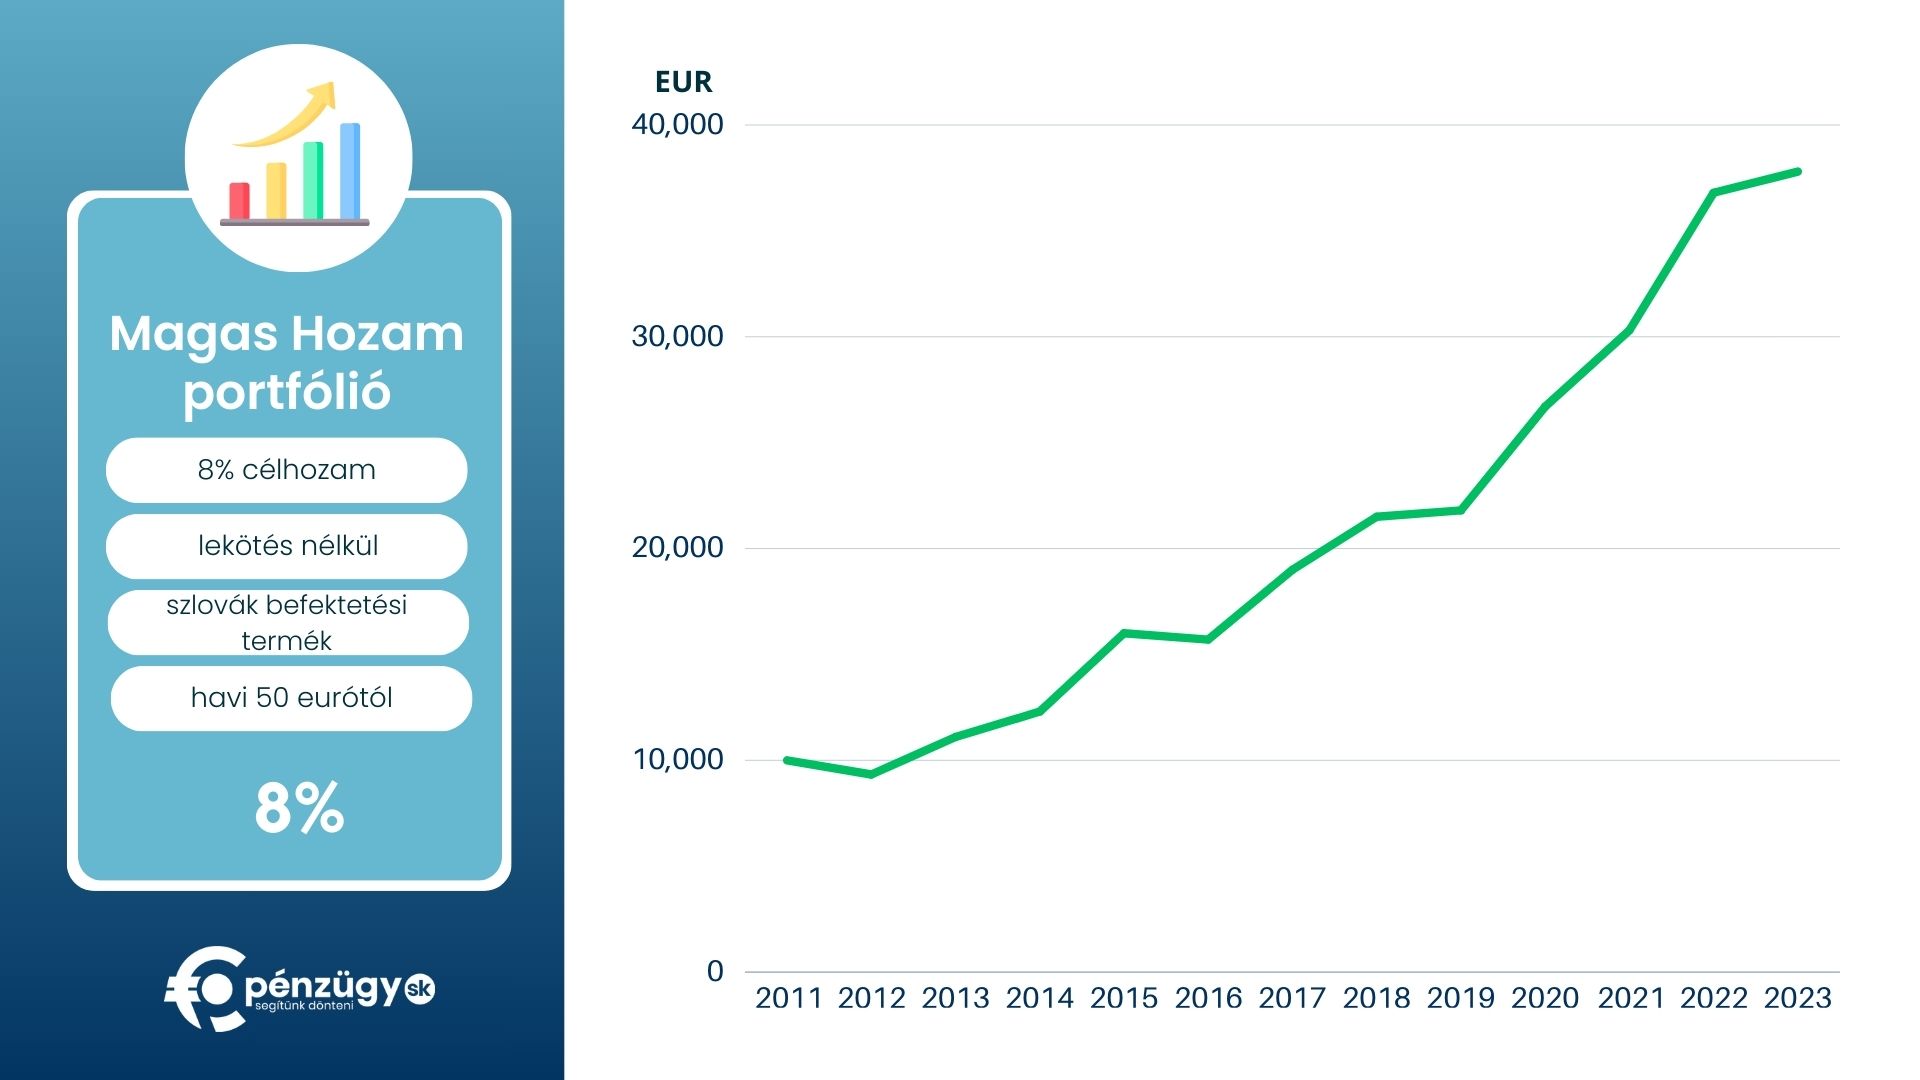 A pénzügy.sk Magas Hozam portfóliójának teljesítménye, mint befektetési lehetőség.